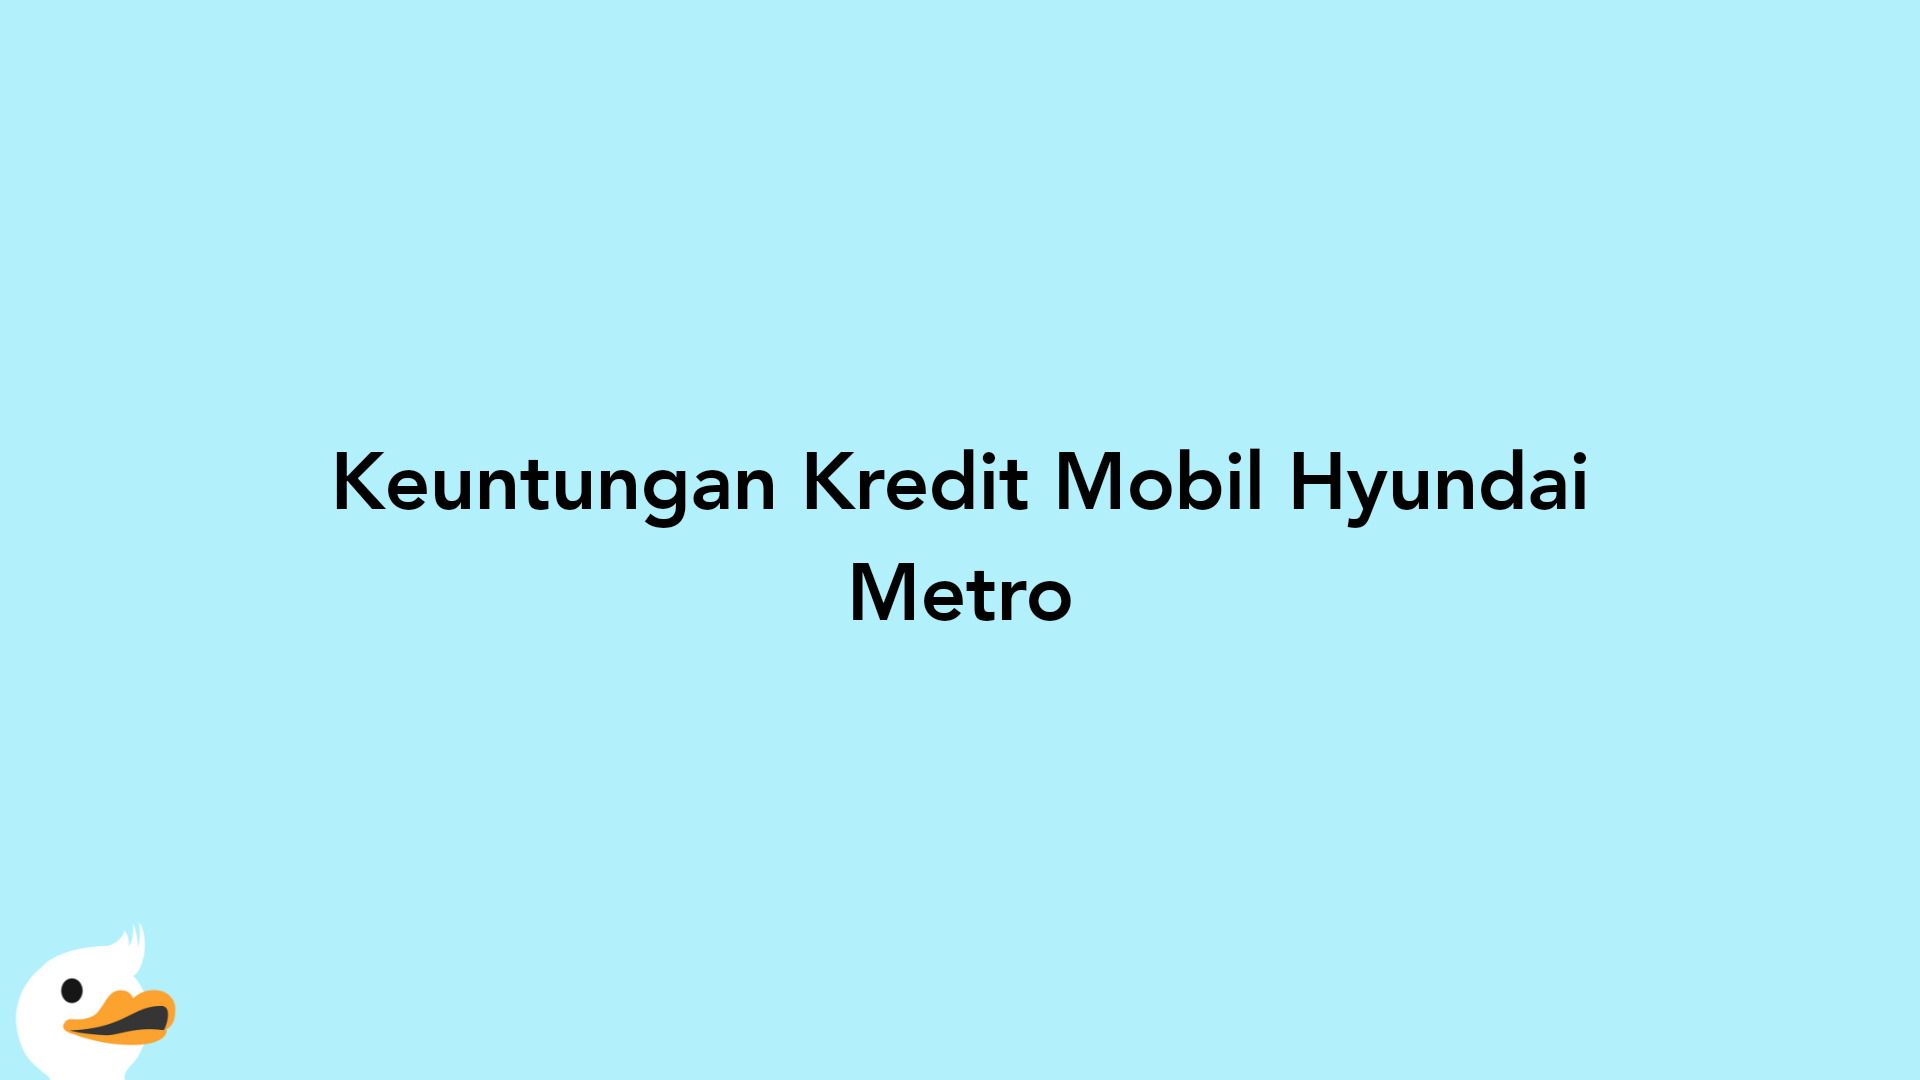 Keuntungan Kredit Mobil Hyundai Metro